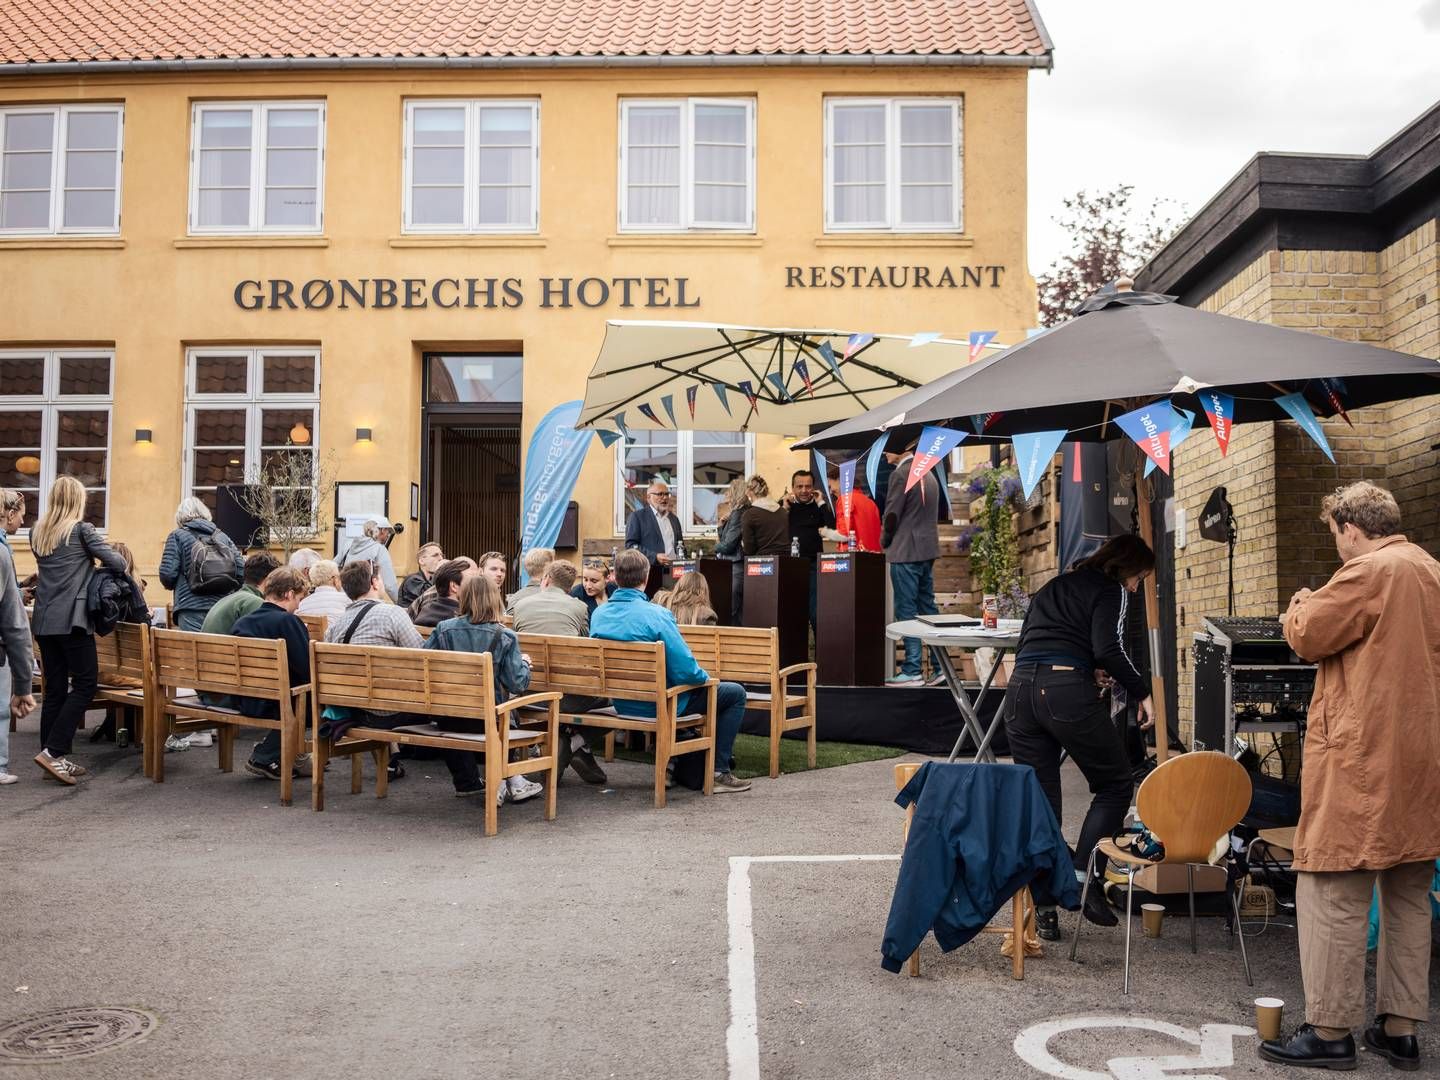 Folkemødets direktør er blevet mødt af kritik både før og efter Folkemødet, der finder sted i Allinge på Bornholm, hvor blandt andet Grønbechs Hotel ligger. | Foto: Thomas Traasdahl/Ritzau Scanpix